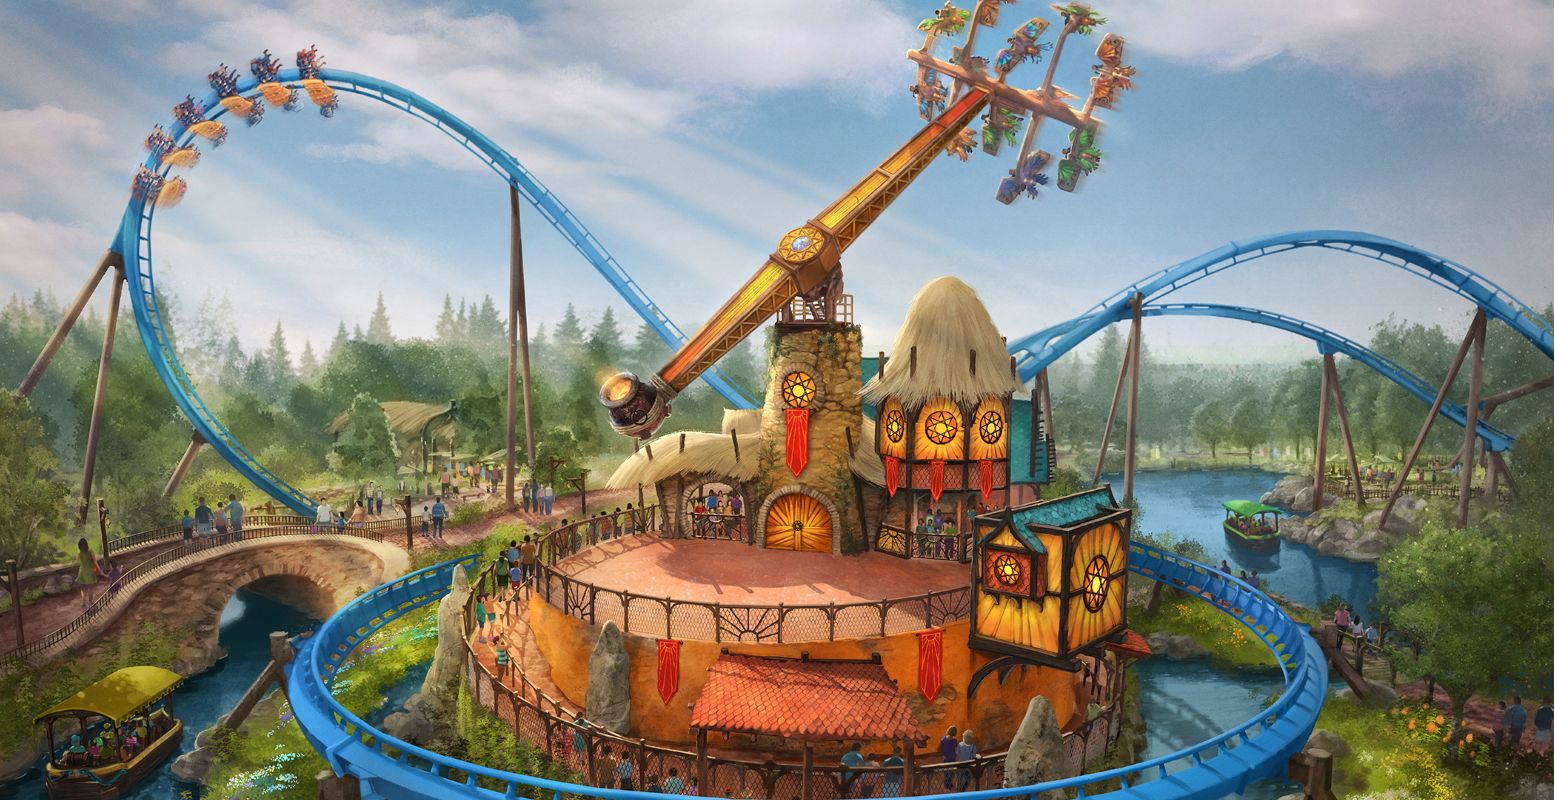 Een impressie van de nieuwe attractie Pixarus, een vliegtuigmolen in de bocht van achtbaan Fēnix. Foto: concept © Toverland